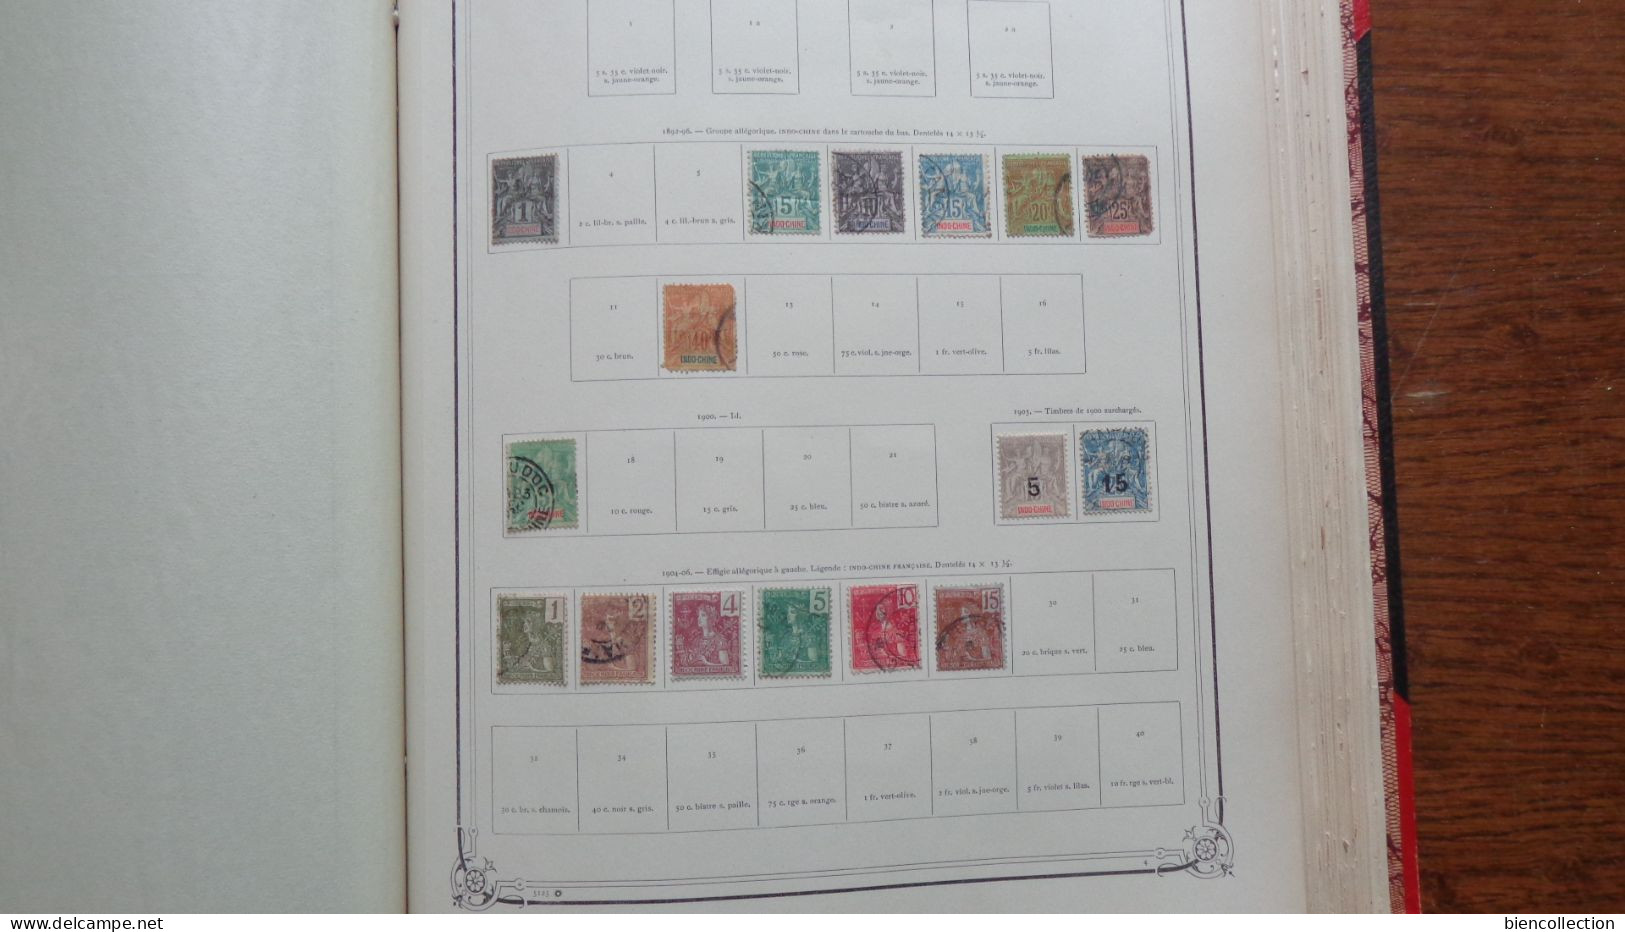 Album Yvert et Tellier des colonies Françaises avec 900 timbres neuf* et oblitérés dont Obock No 52  belle oblitération